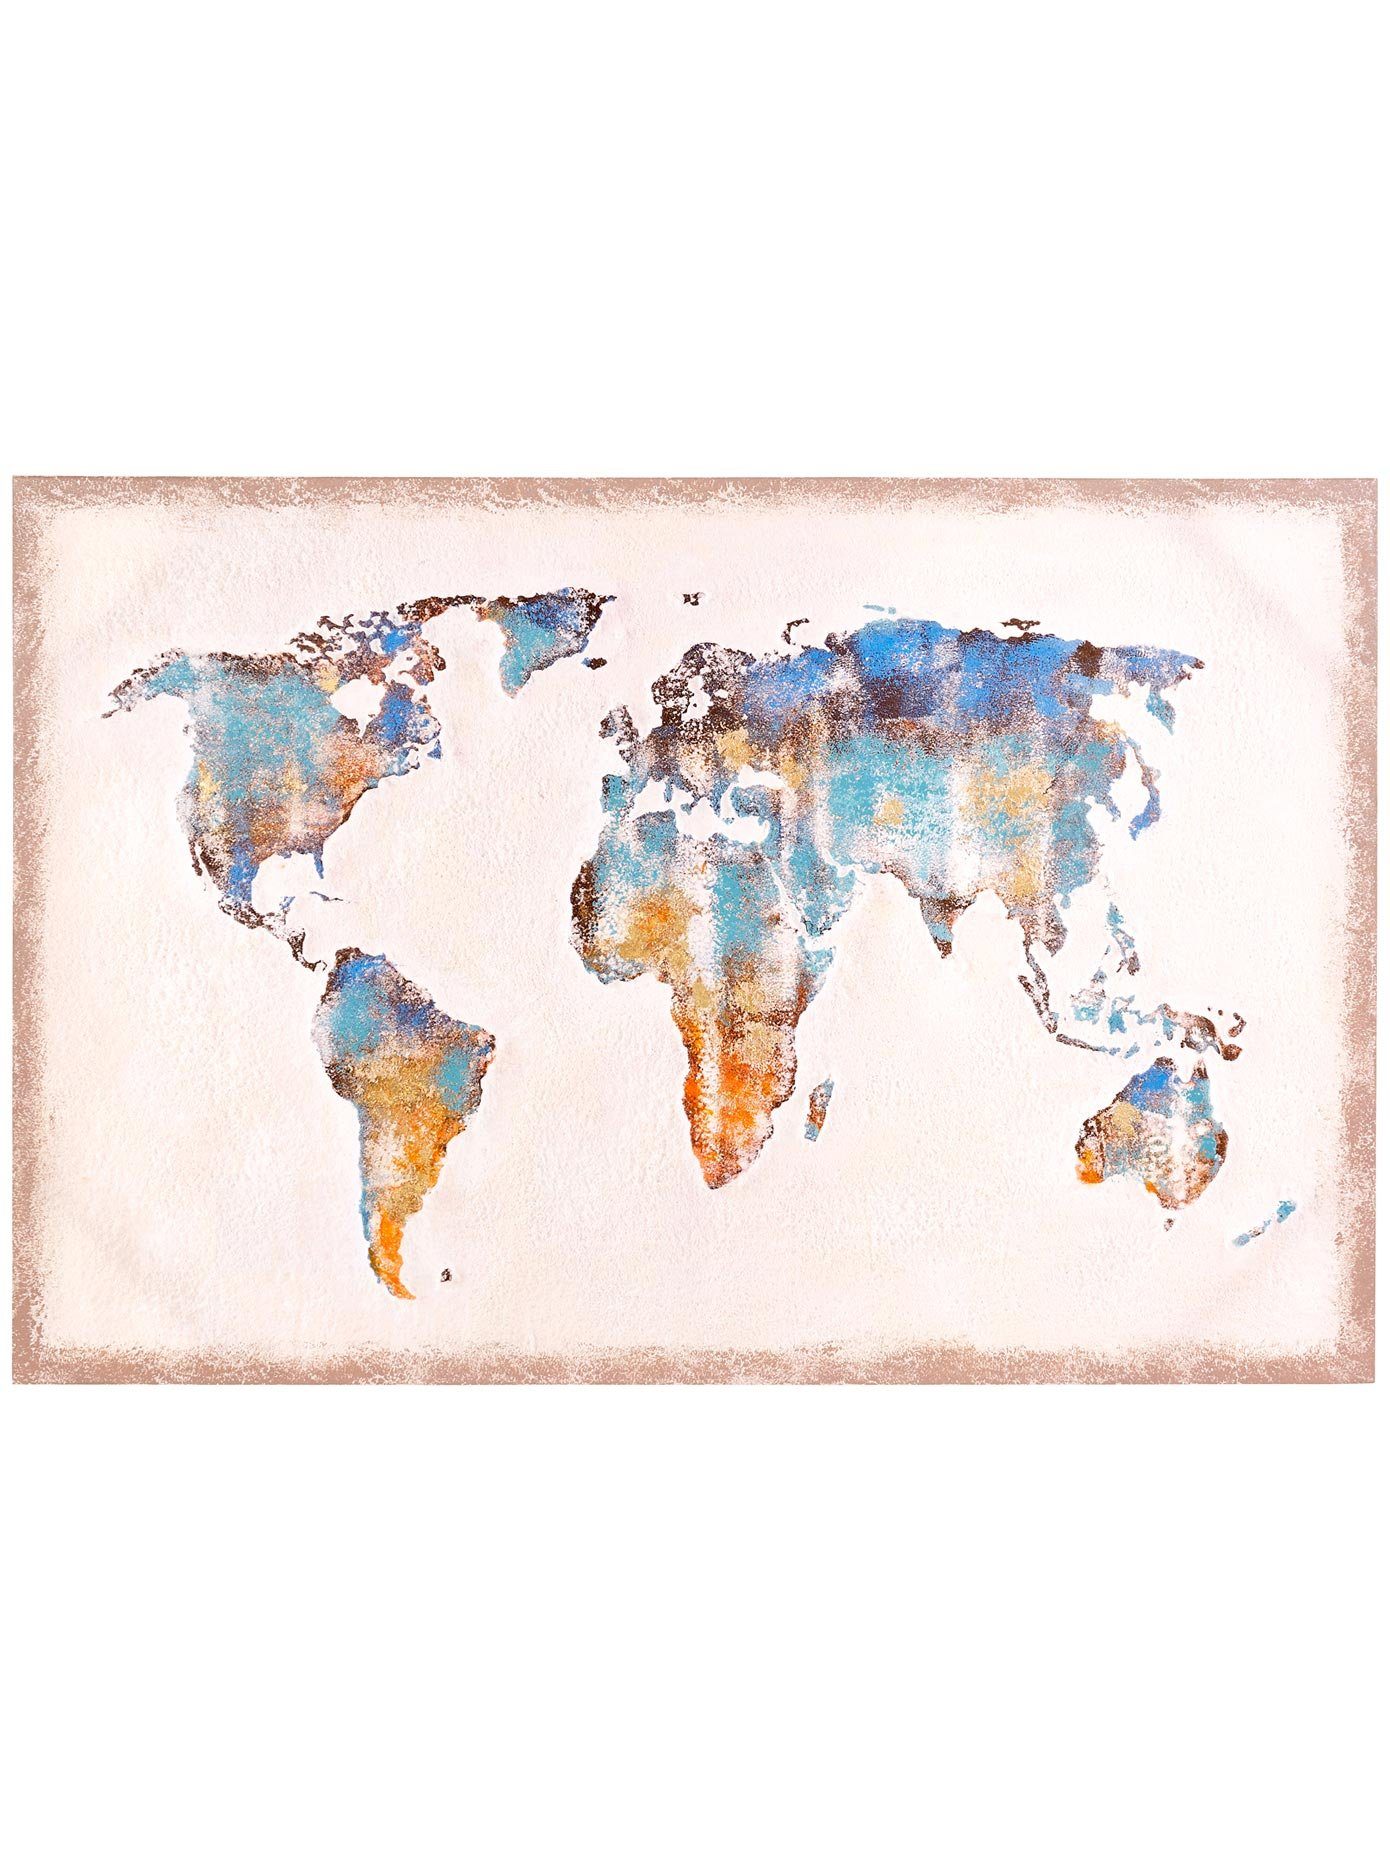 Bild Weltkarte mehrfarbig 